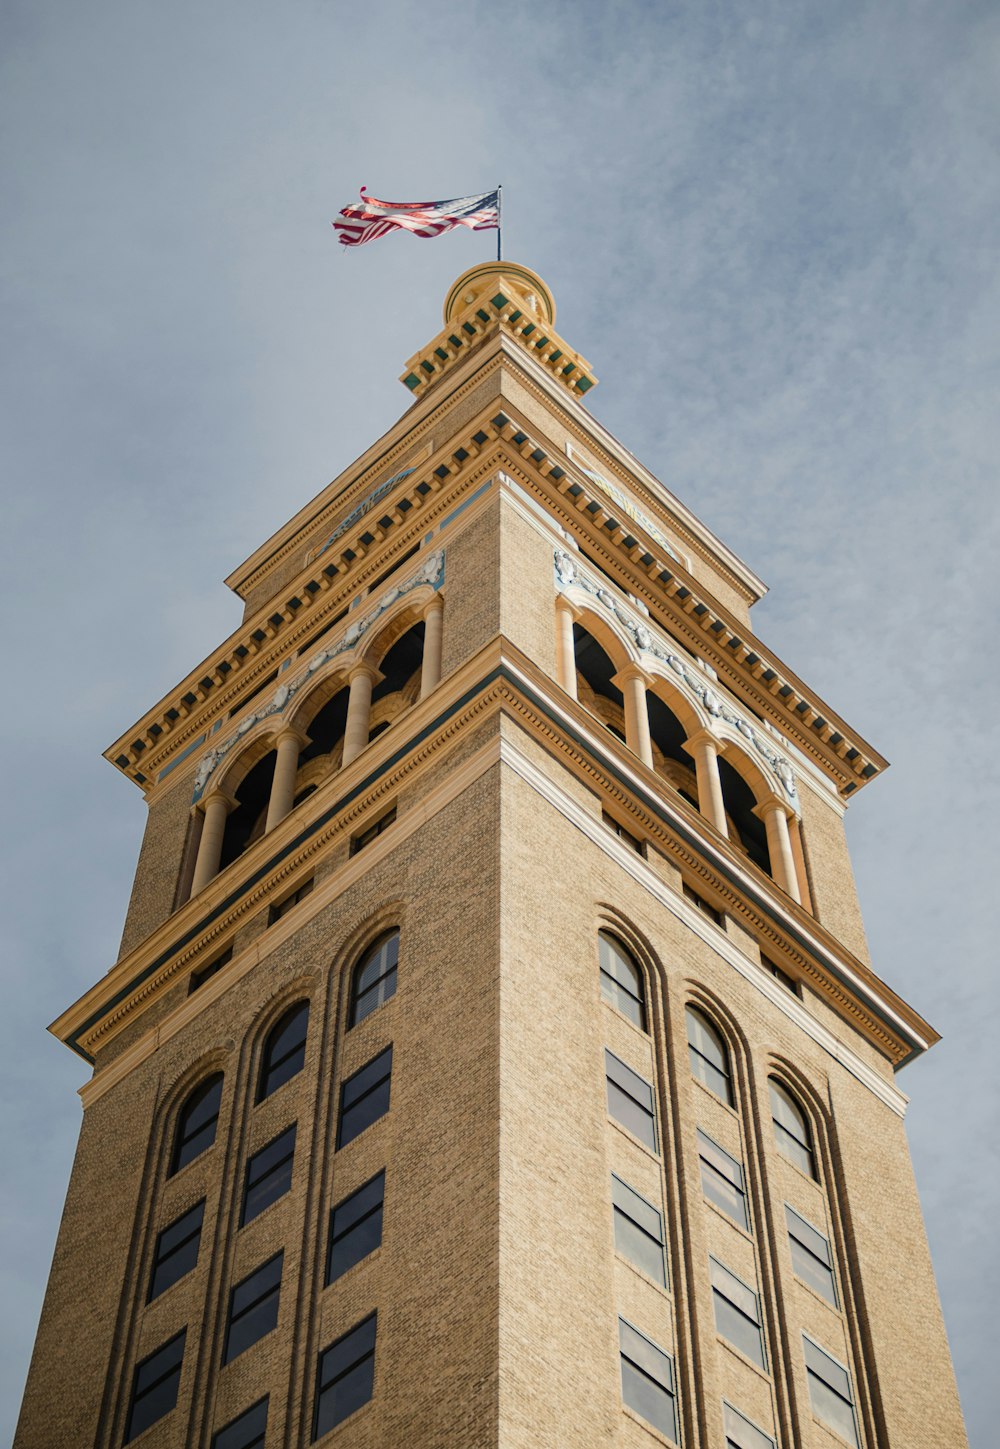 그 위에 깃발이있는 고층 건물